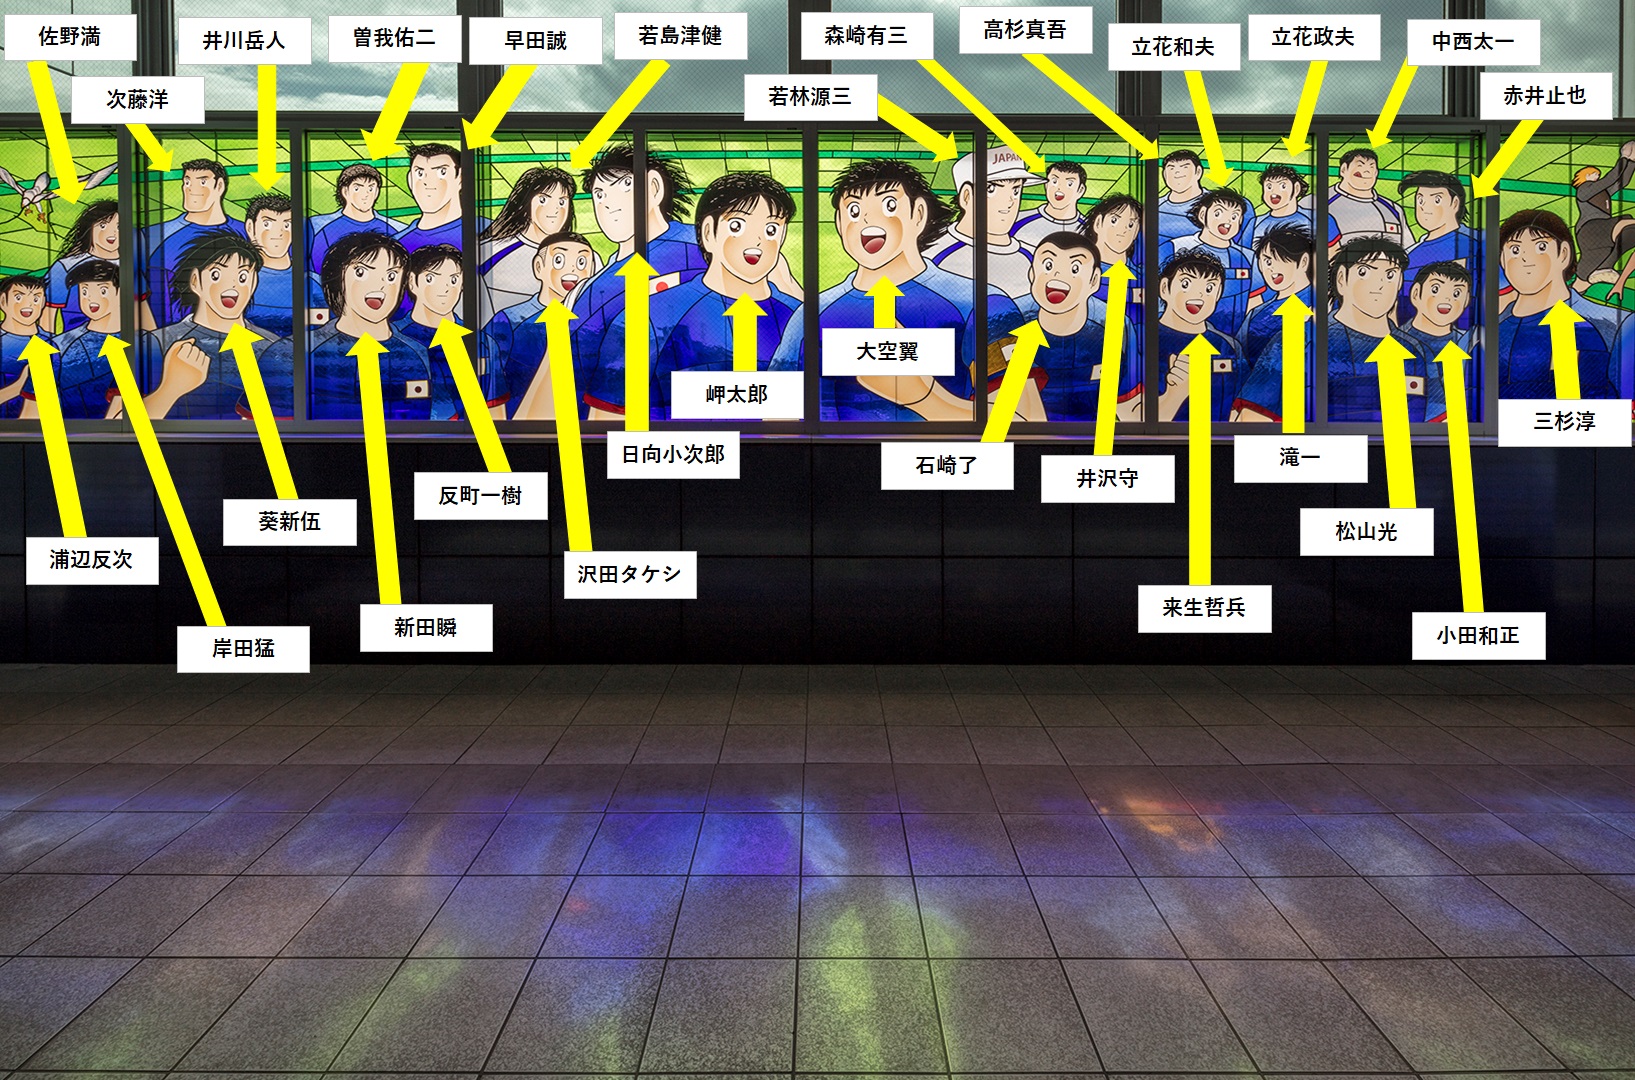 浦和美園駅のキャプテン翼ステンドグラスについて徹底調査 Camisa8のブログ